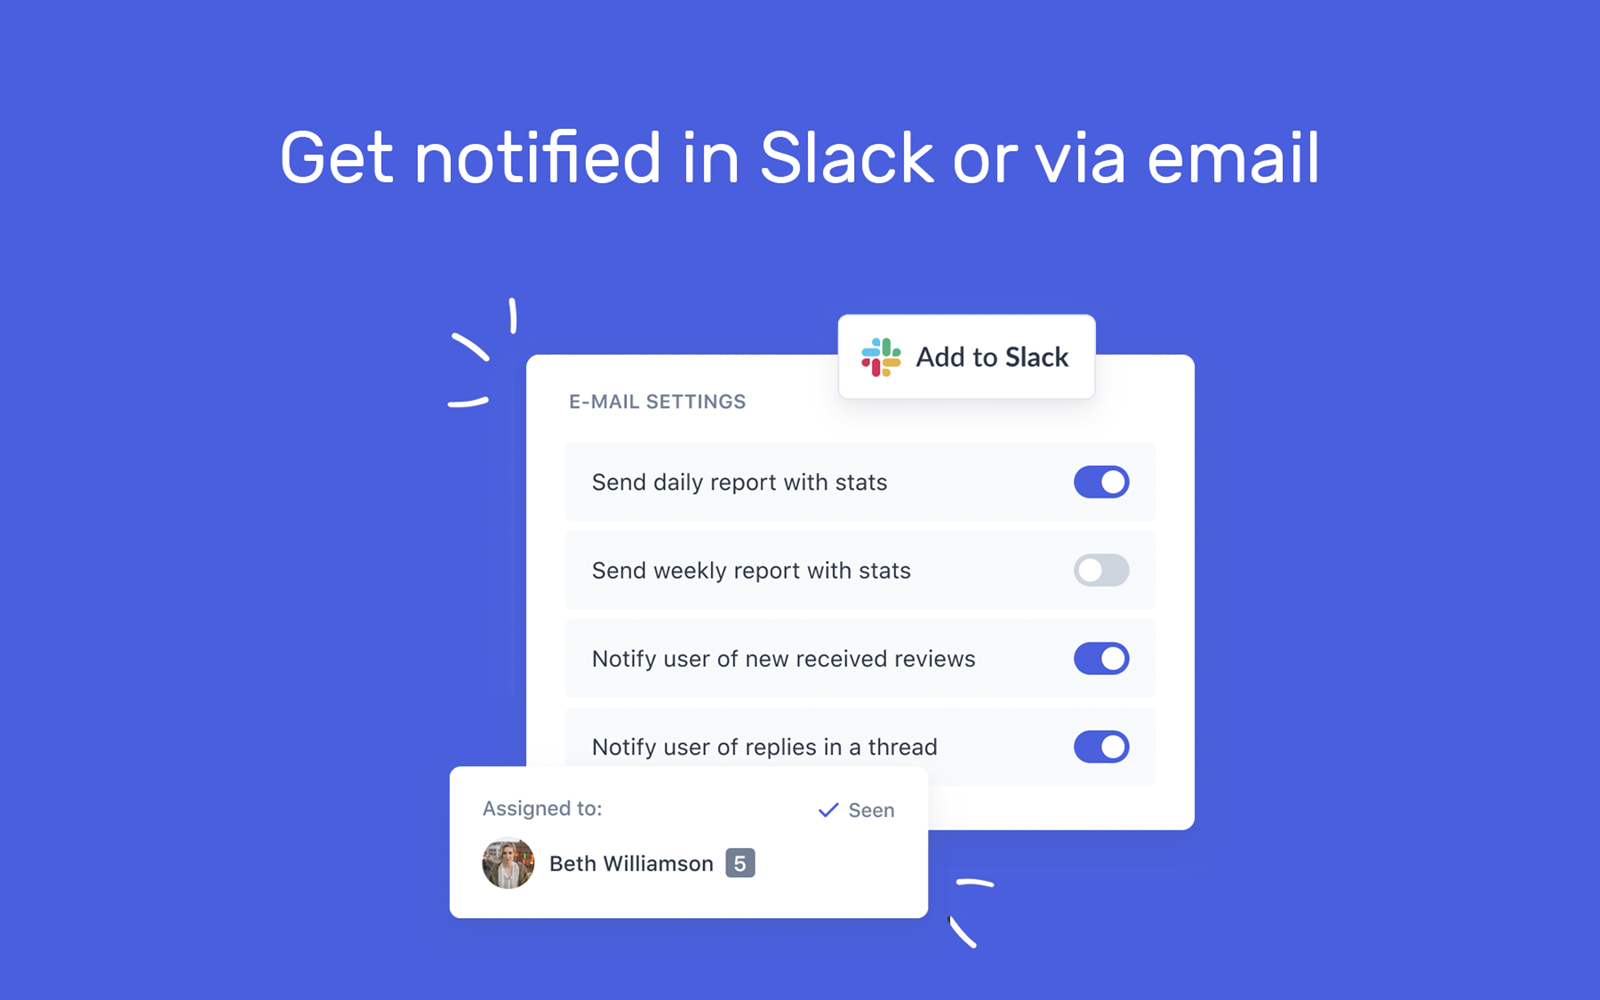 Get notified in Slack or via email